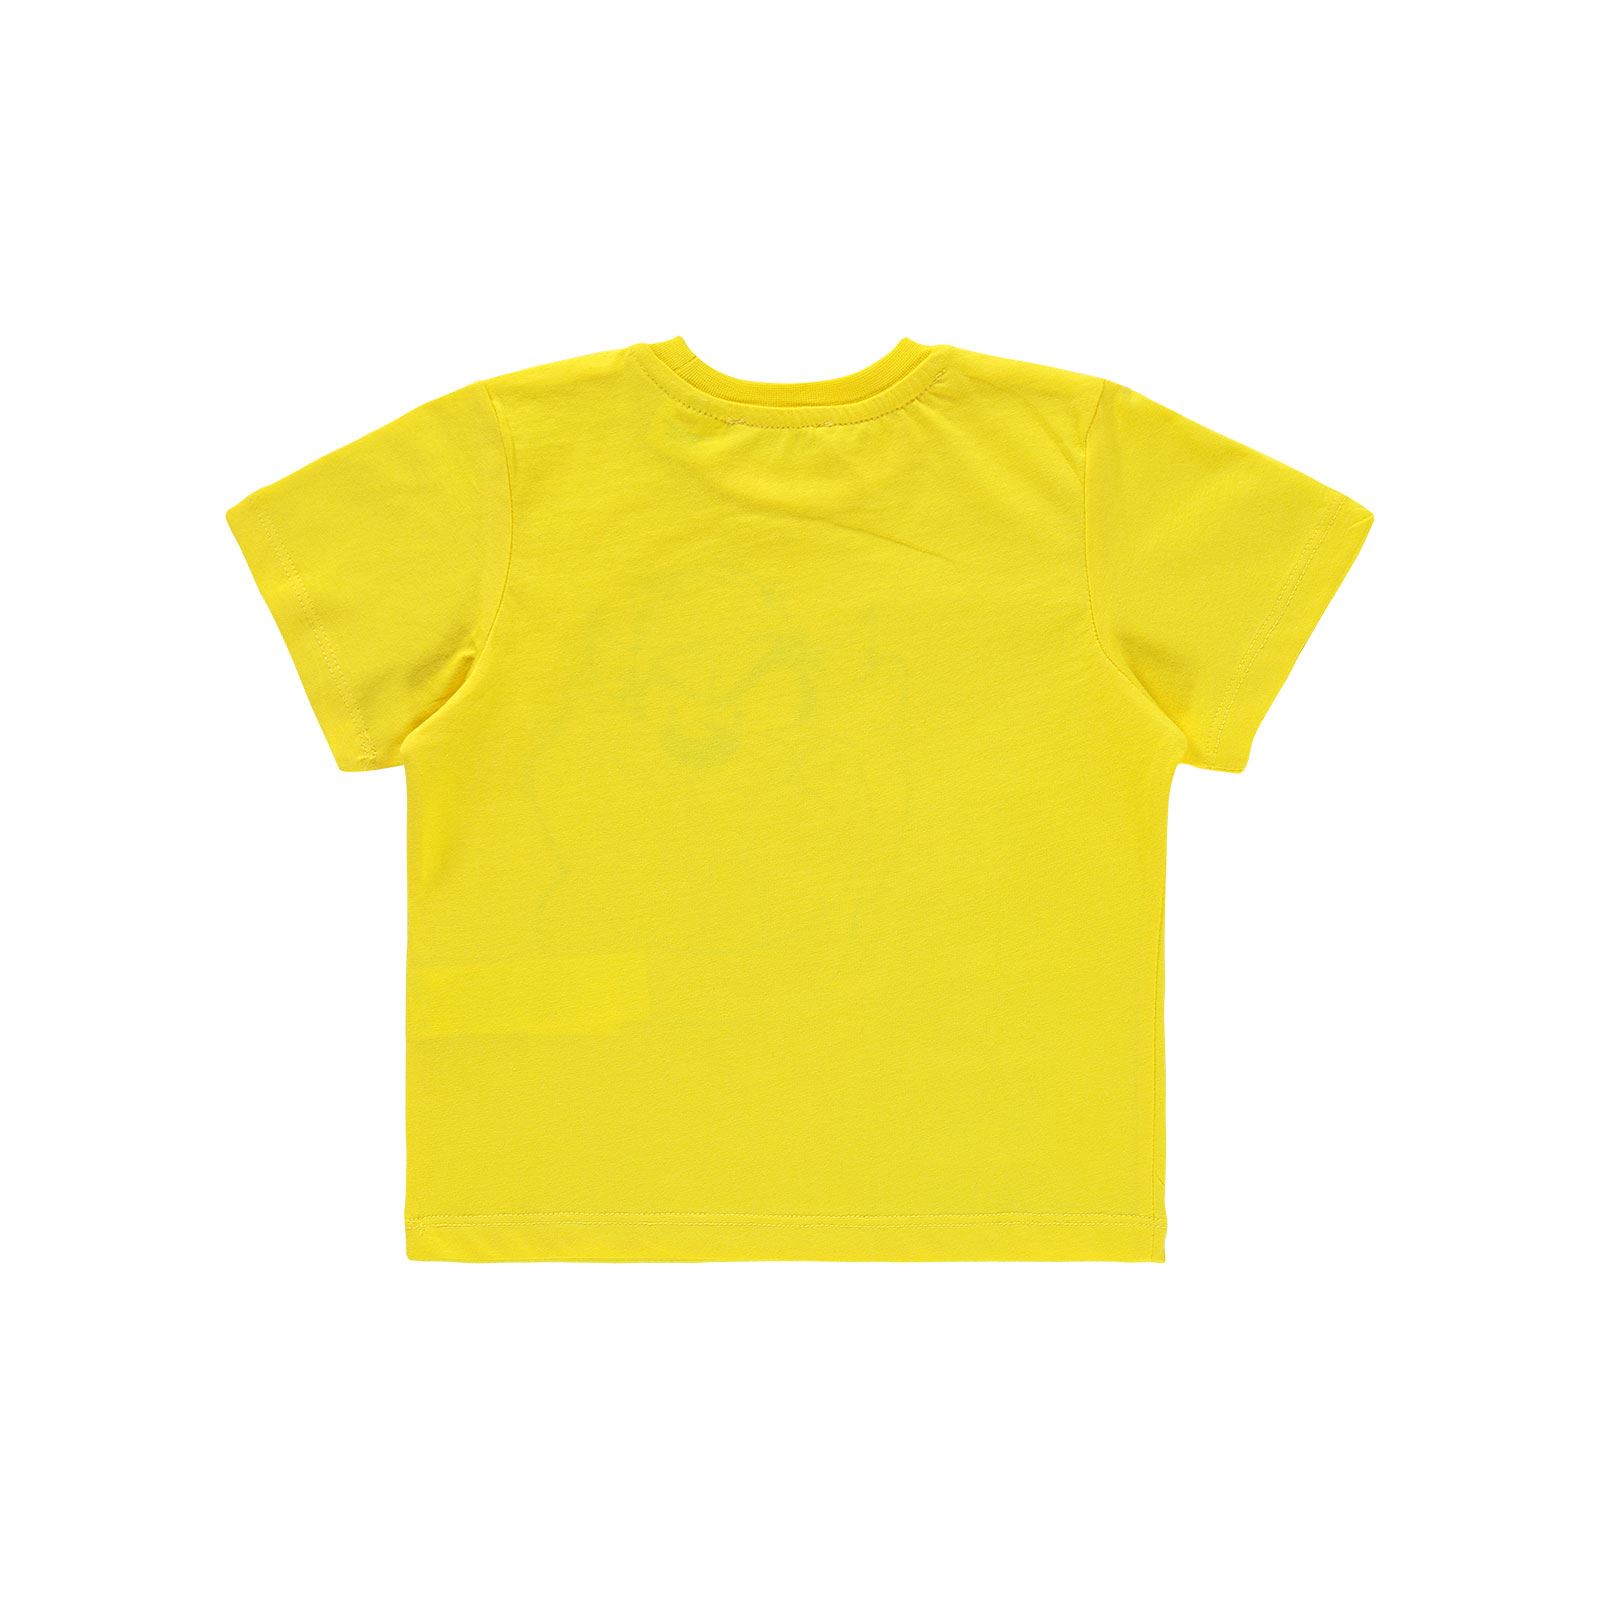 Tazmanya Erkek Çocuk Tişört 2-5 Yaş Sarı